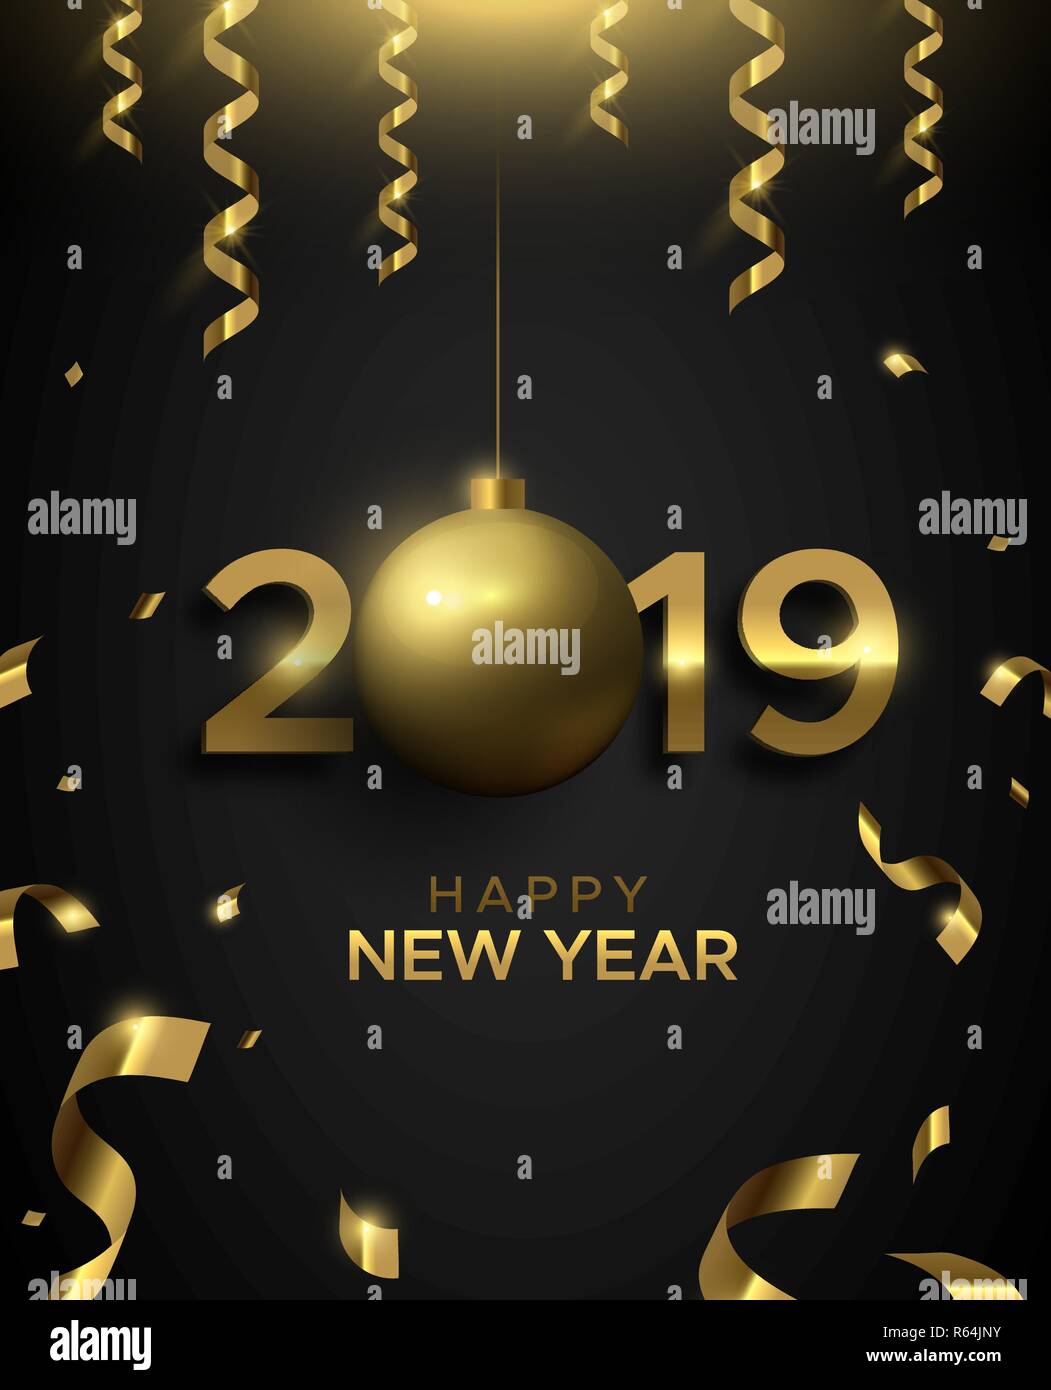 Happy New Year Karte, Gold 2019 Christbaumkugel ornament unterzeichnen. Luxus Typografie Anzahl Hintergrund für Party Einladung oder Jahreszeiten Gruß. Stock Vektor